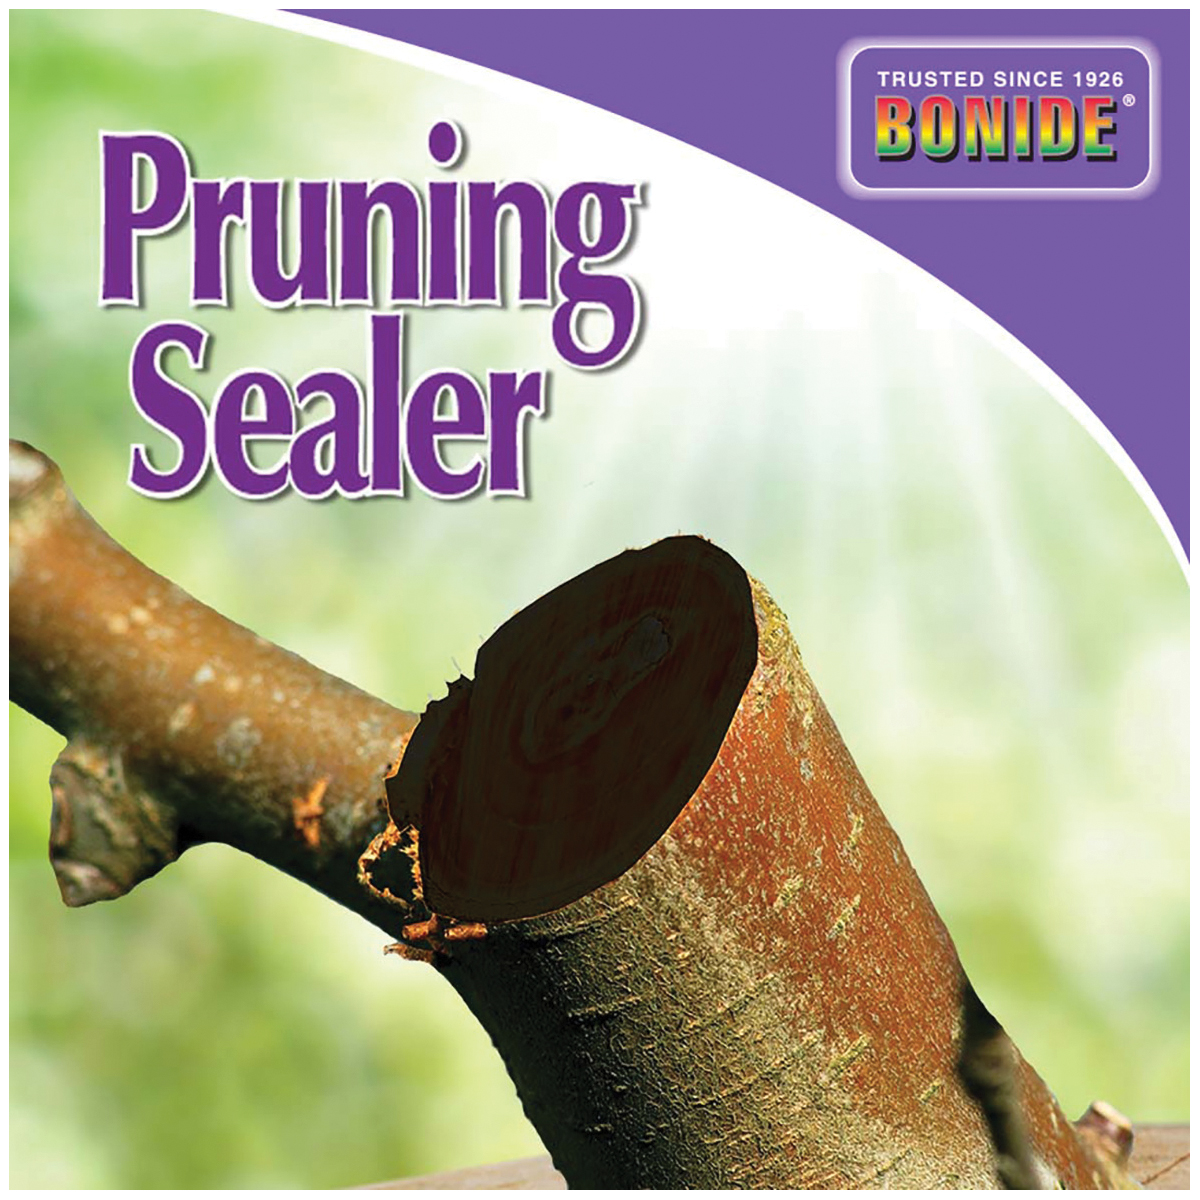 Bonide 221 Pruning Sealer, Liquid, Petroleum Solvent, Black, 14 oz Aerosol Can - 3